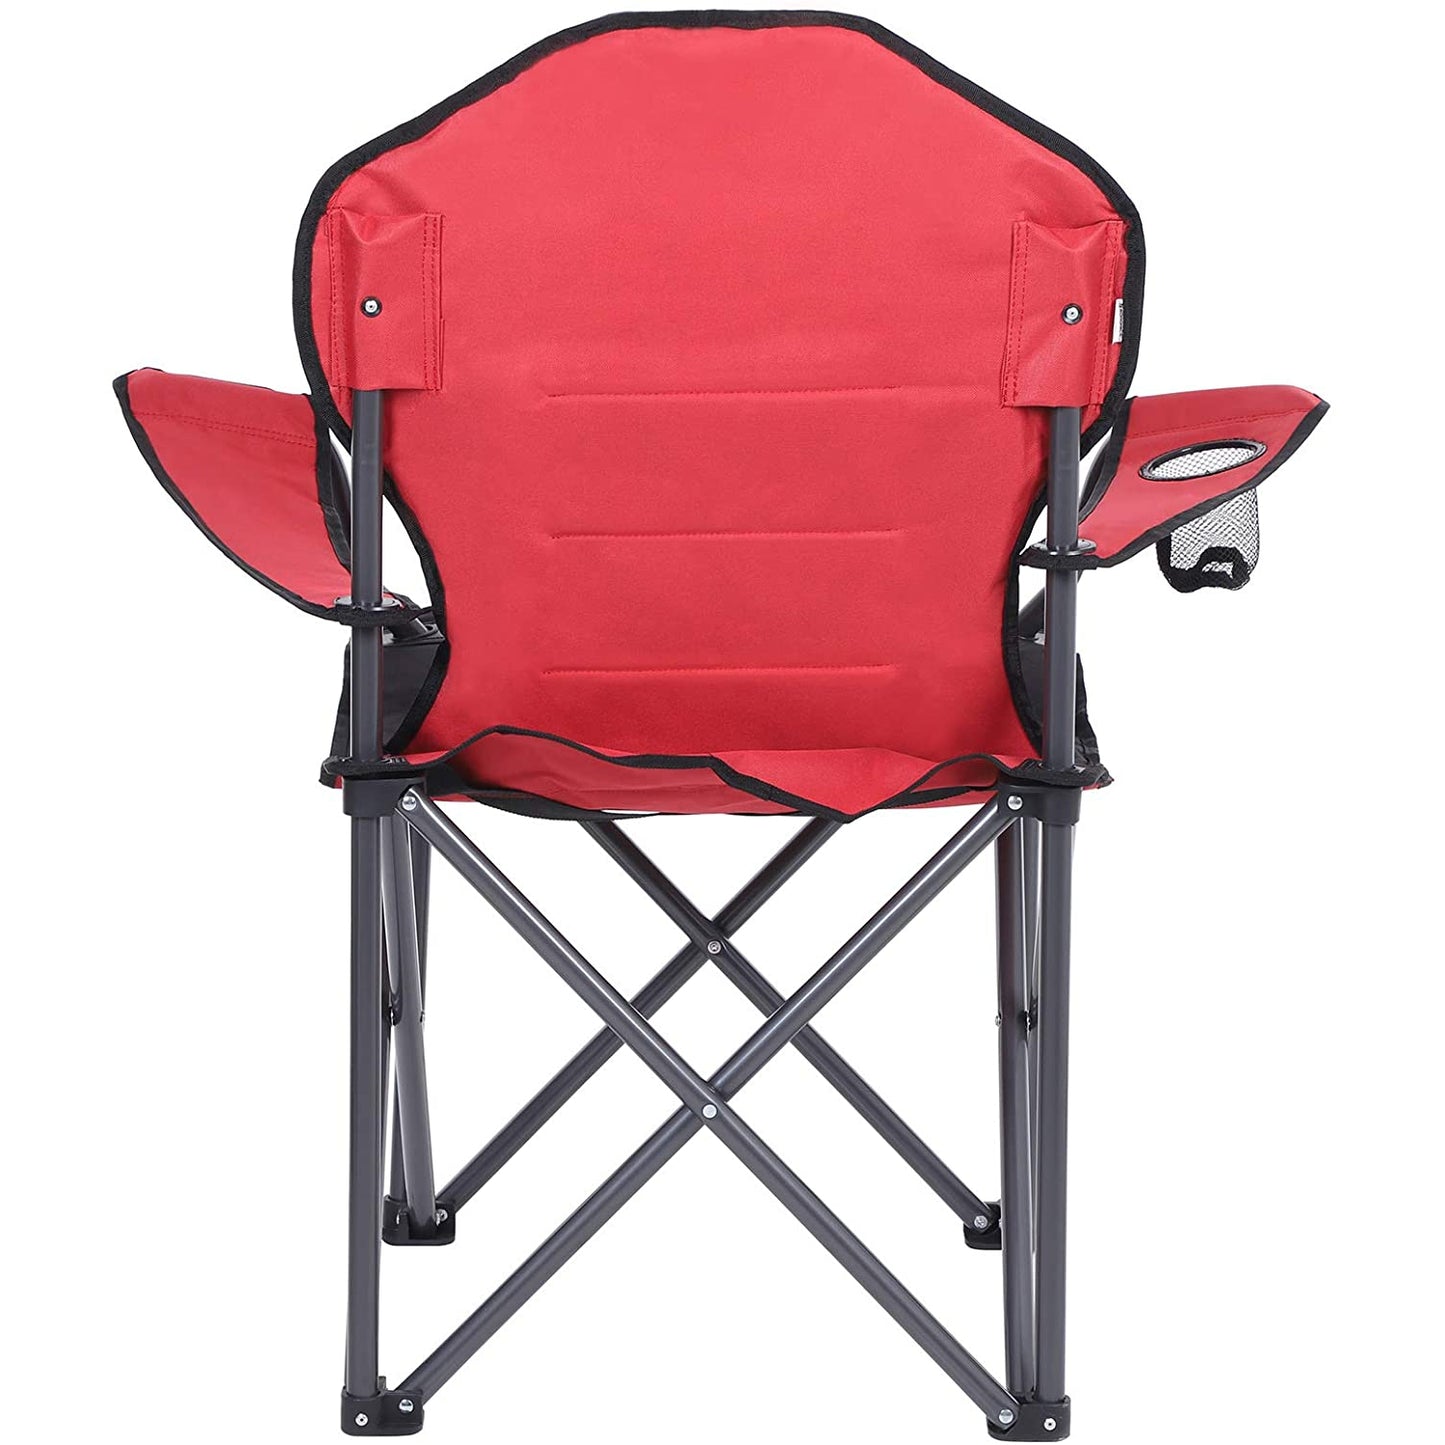 Chaise de camping Nancy's Foley - Chaise pliante - Porte-bouteille - Extérieur - Mousse - Rouge - Noir - Fer - Tissu - 90 x 55 x 102 cm